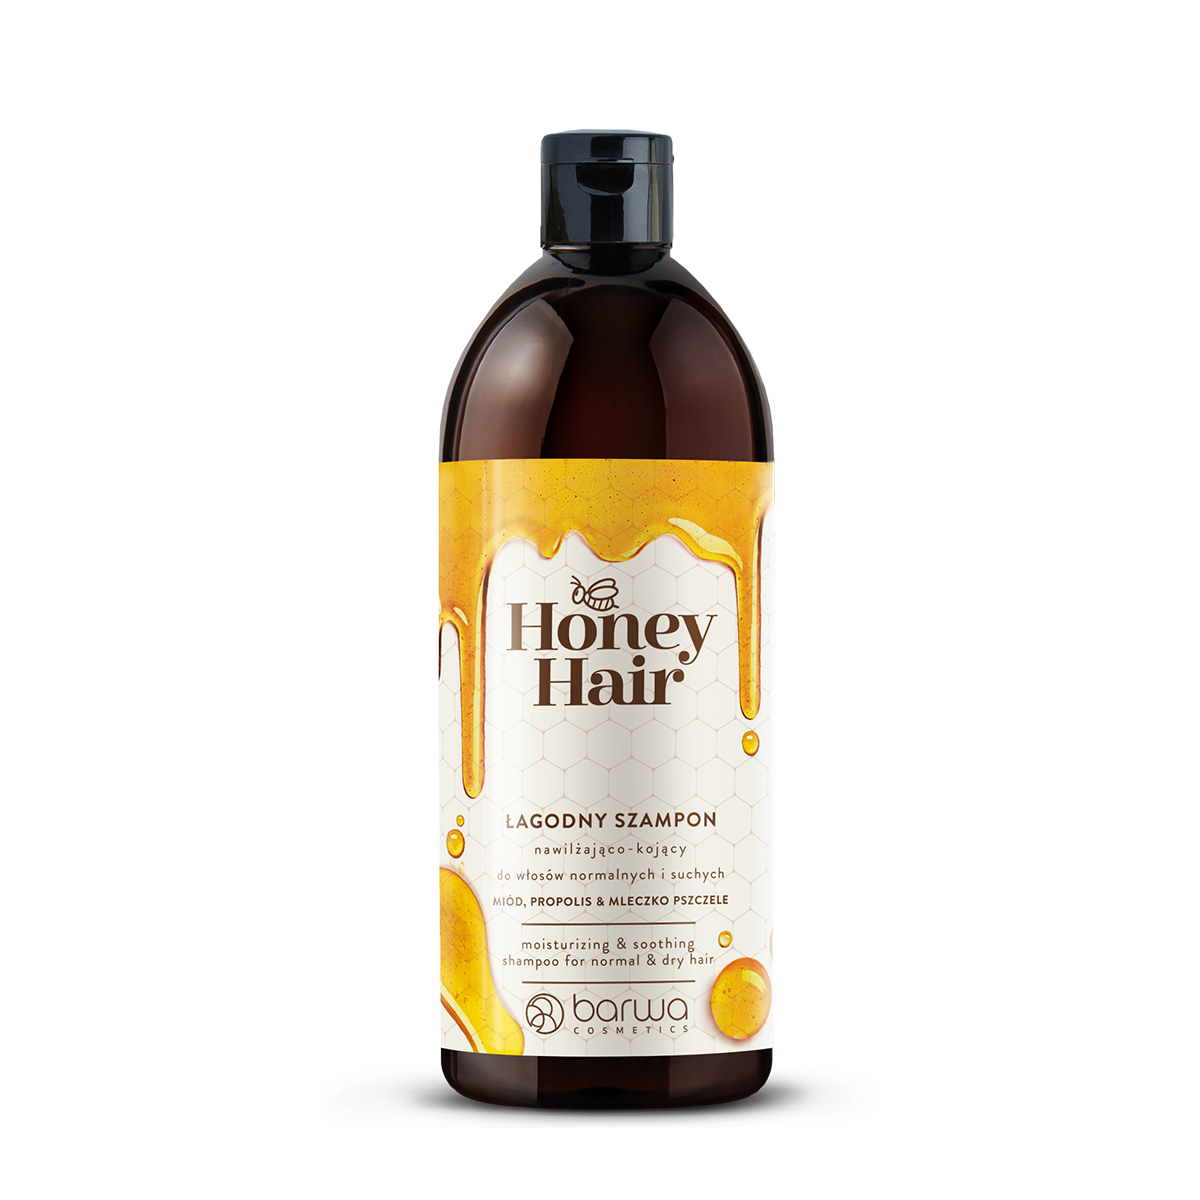 Увлажняющий и успокаивающий шампунь для волос Barwa Honey Hair, 500 мл романова ольга владимировна здоровье из улья мед прополис перга маточное молочко